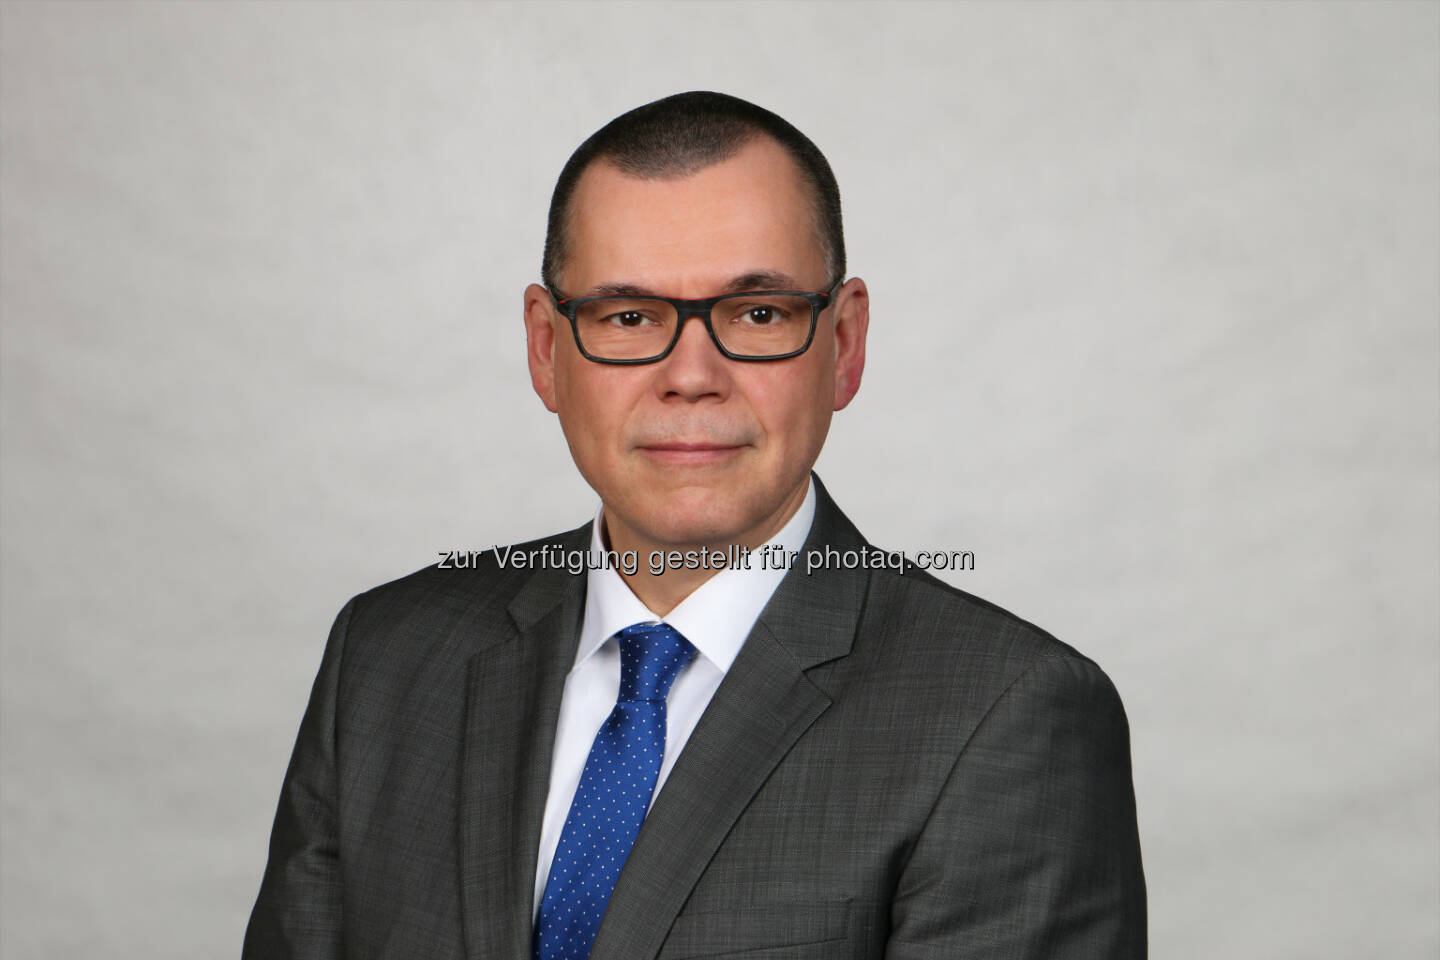 Ralf Kerssenfischer, Managing Director, AVL DiTEST GmbH Deutschland - AVL DITEST: Wechsel in der Führungsebene (Fotocredit: AVL DiTEST)